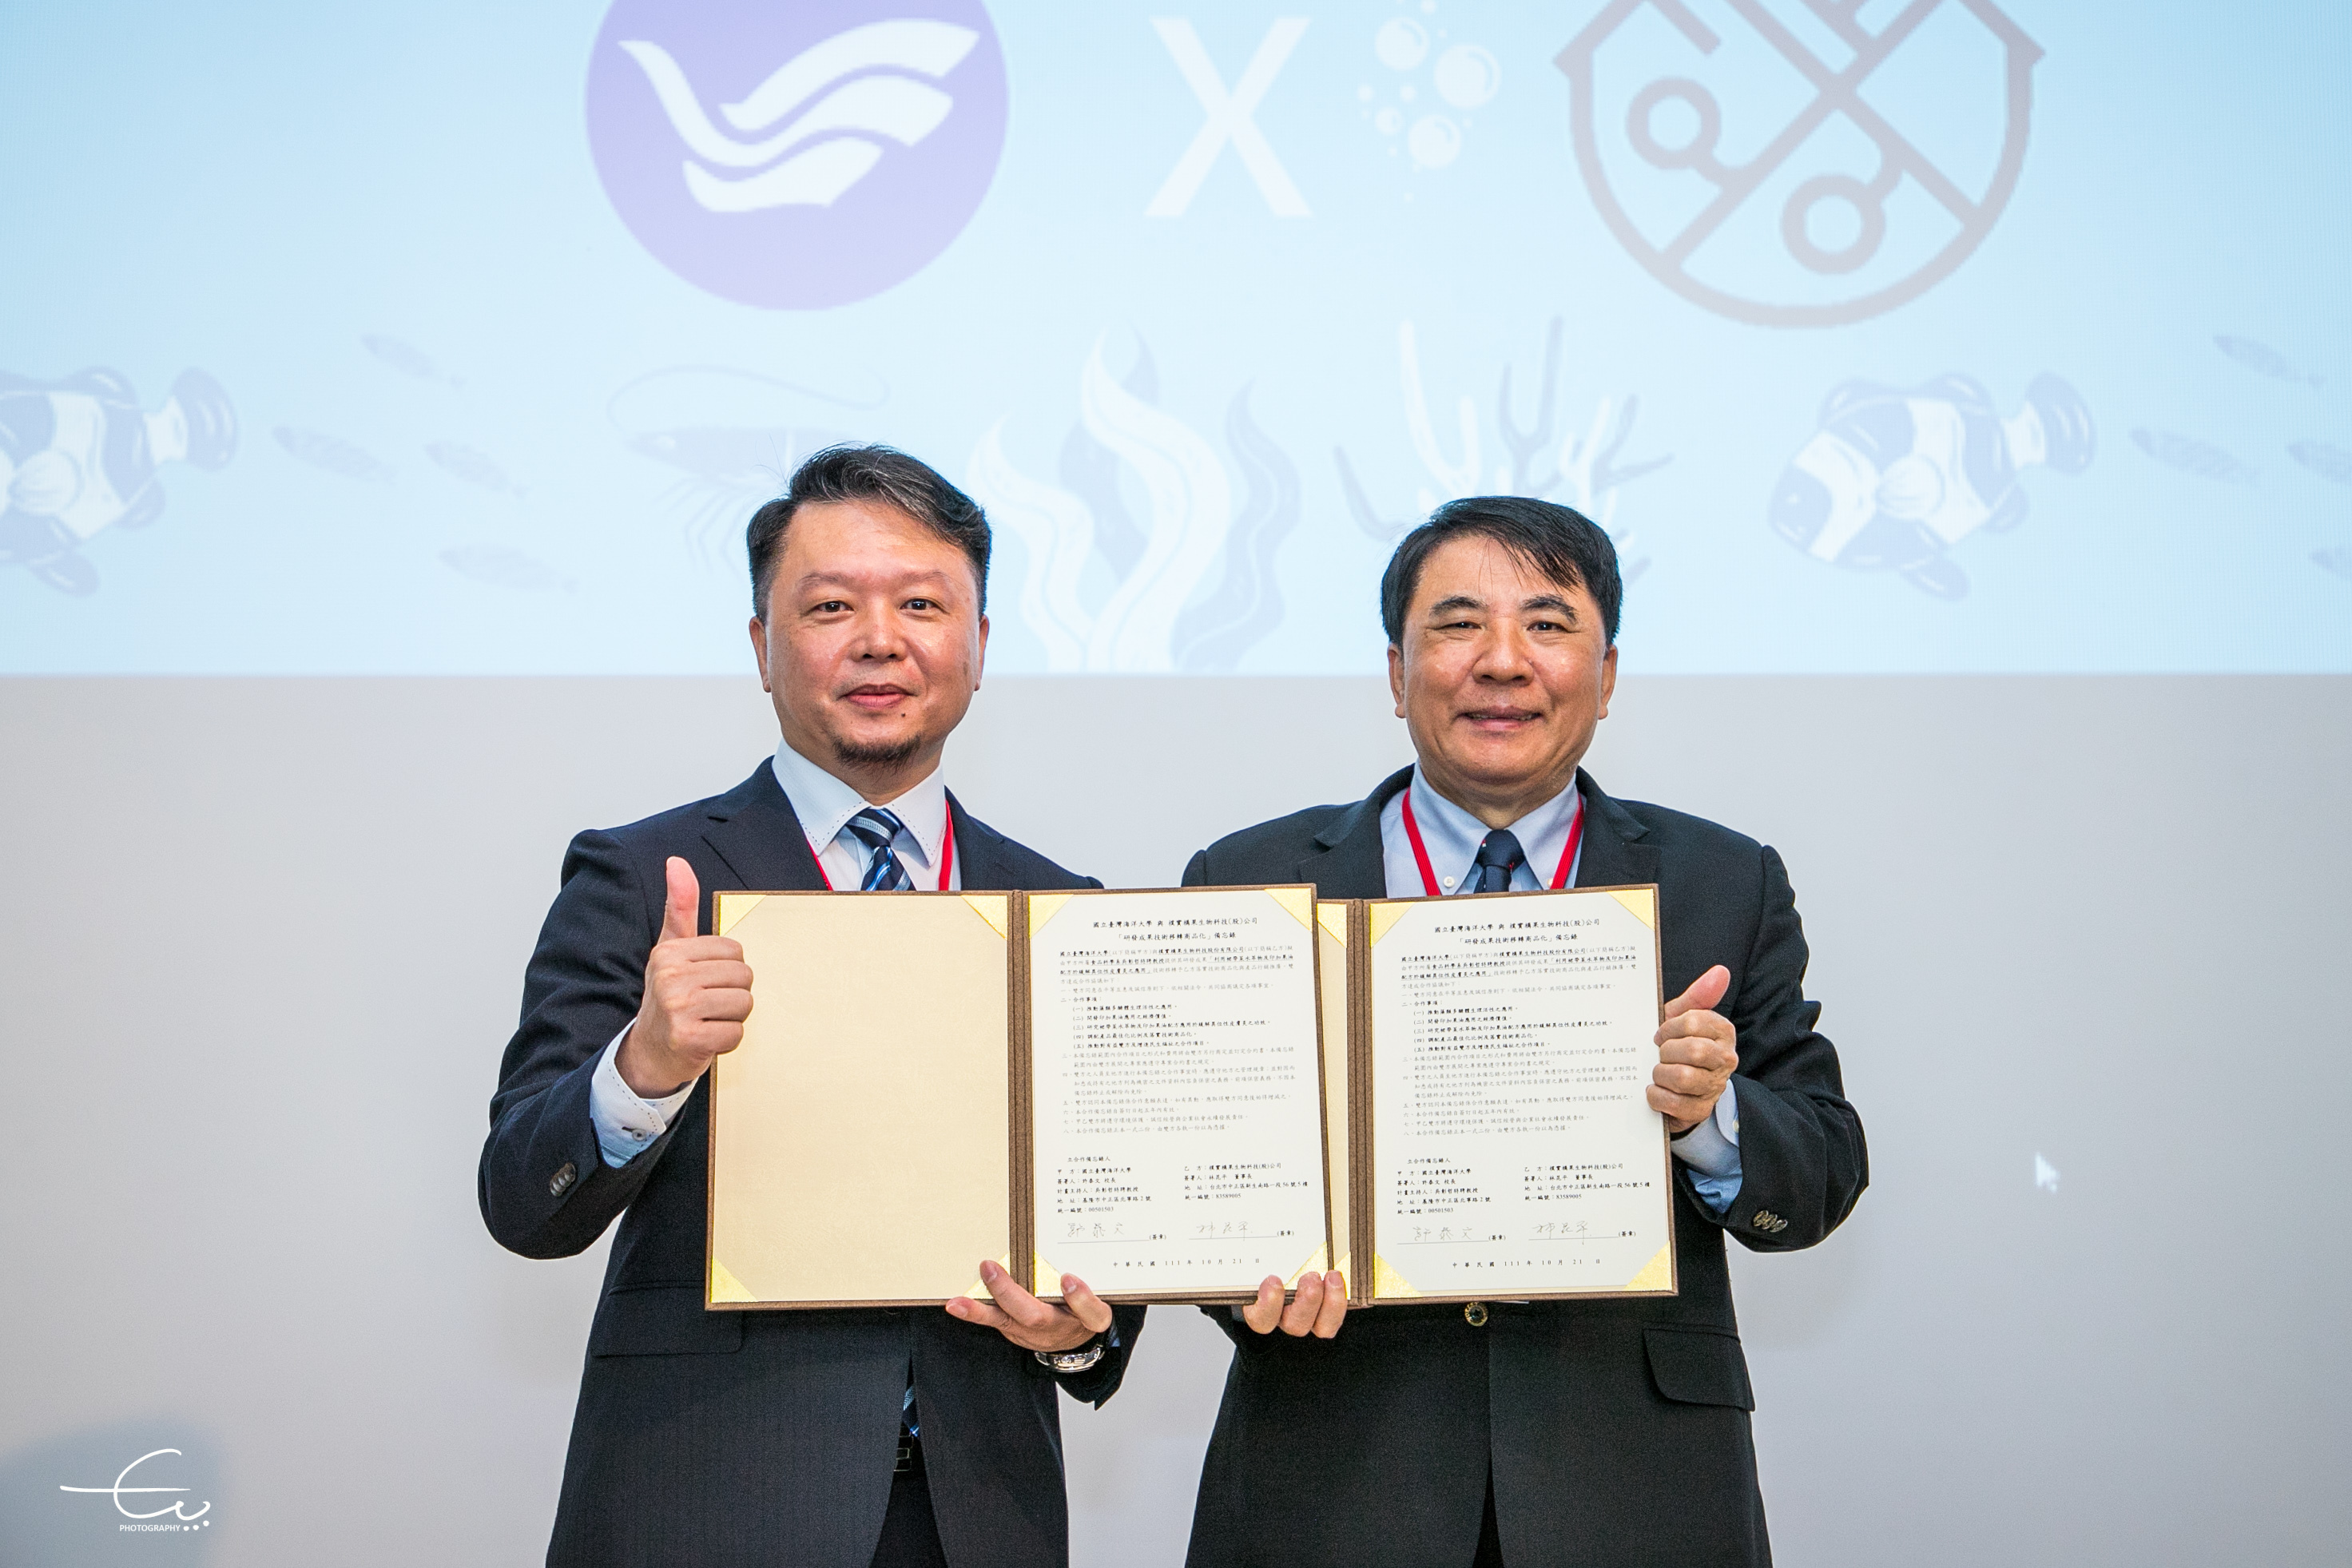 由許泰文校長(右)與林昆平董事長(左)代表簽署技轉商品化合作備忘錄